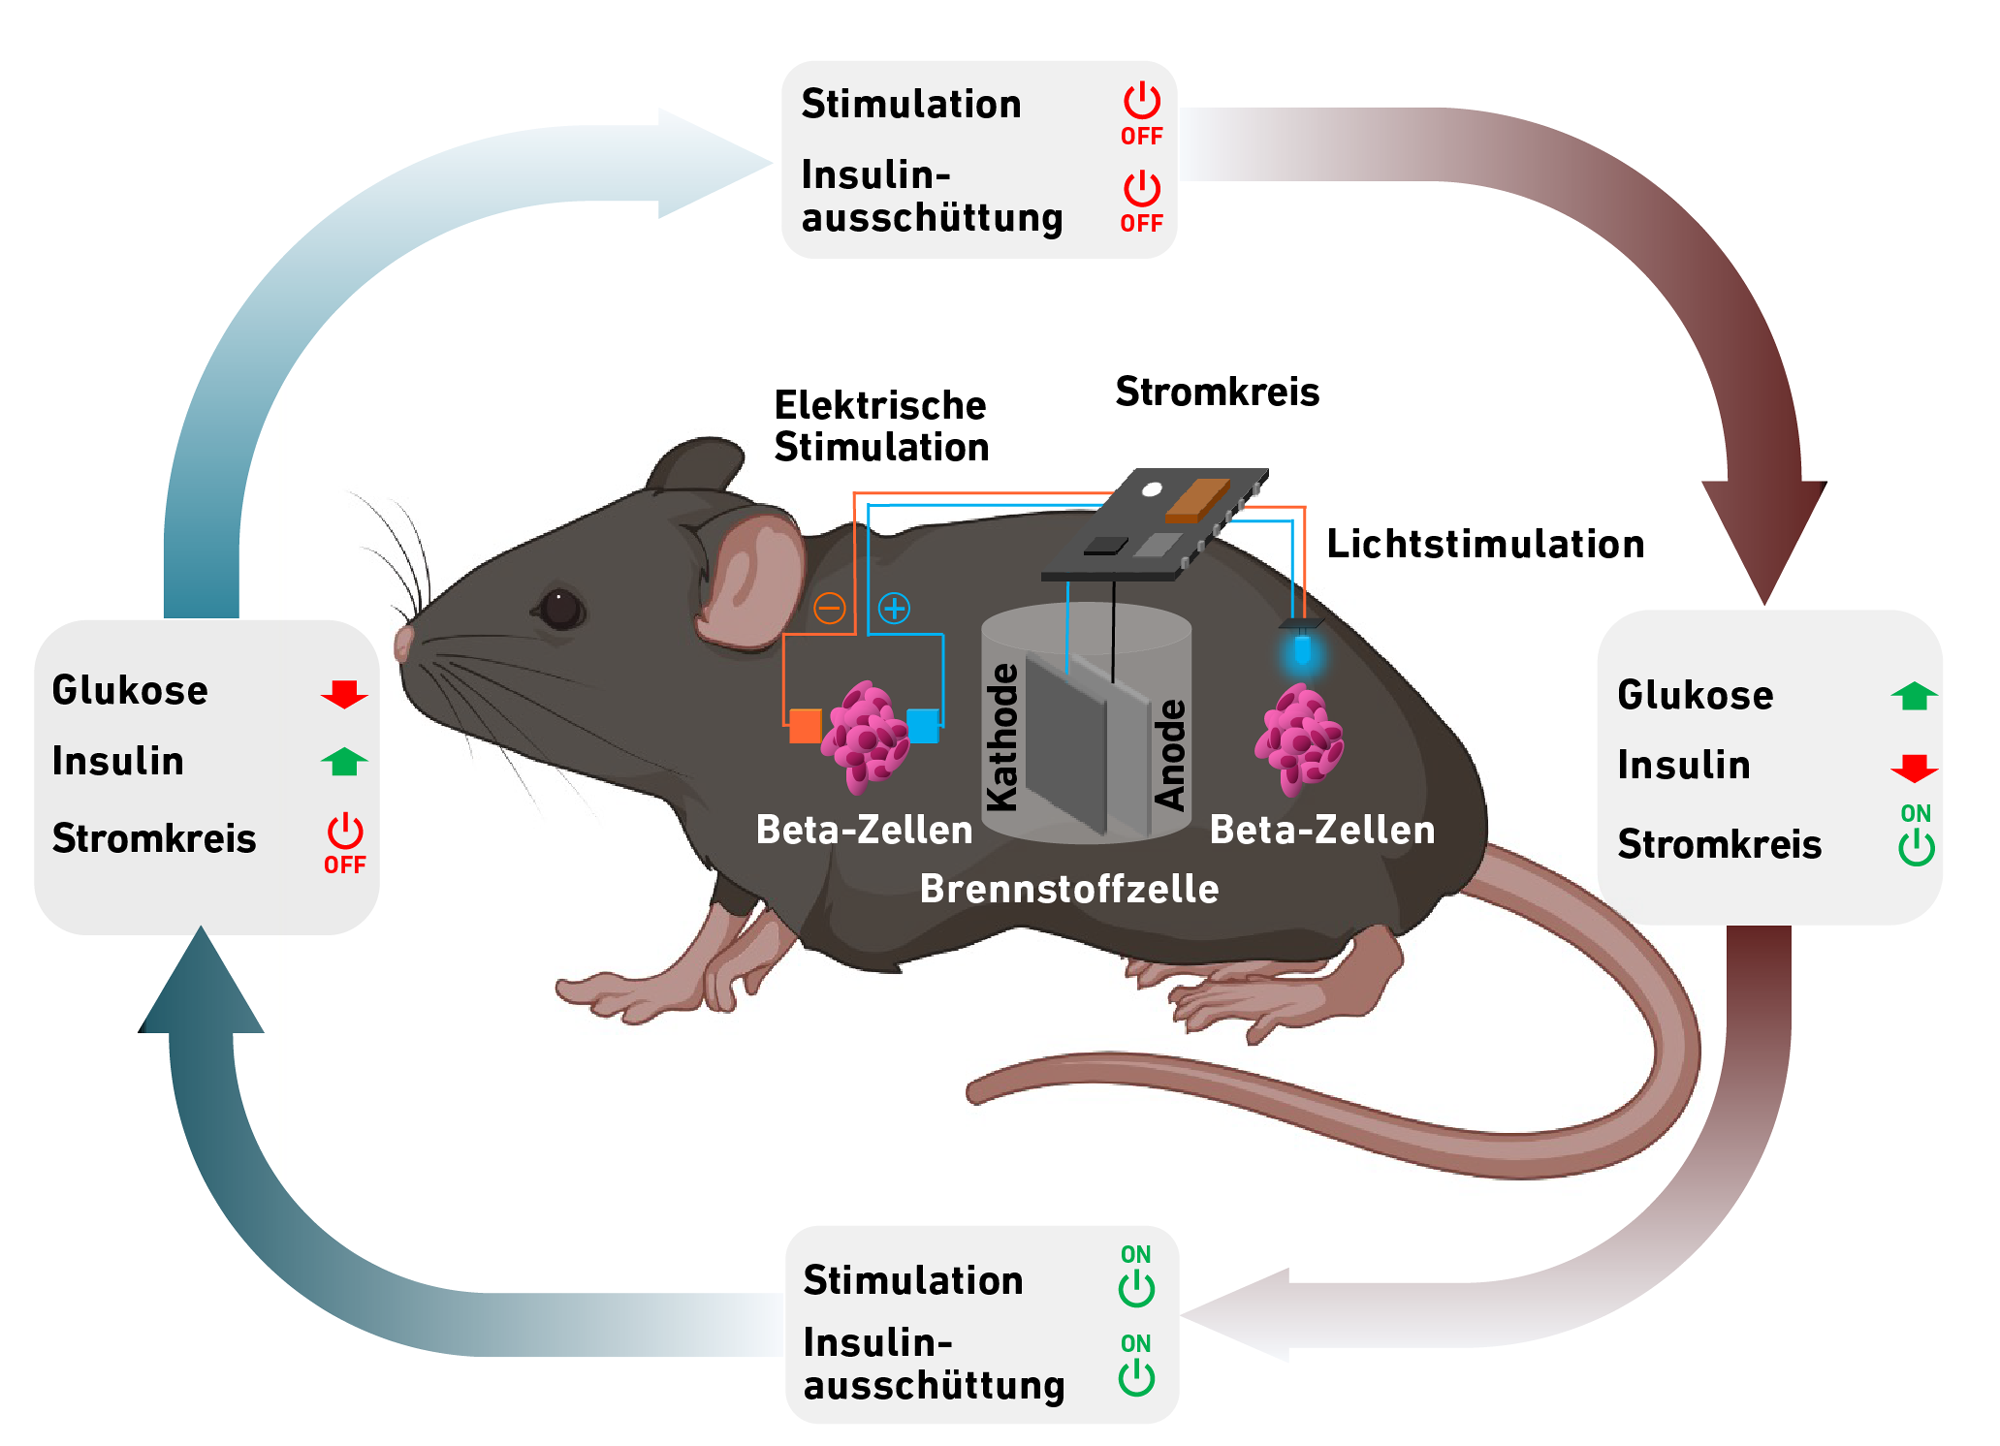 Vergr?sserte Ansicht: Schema. Brennstoffzelle in einer Maus, Betazellen, Stromkreis und zyklischer Ablauf Energiegewinnung und Insulinsenkung dargestellt.